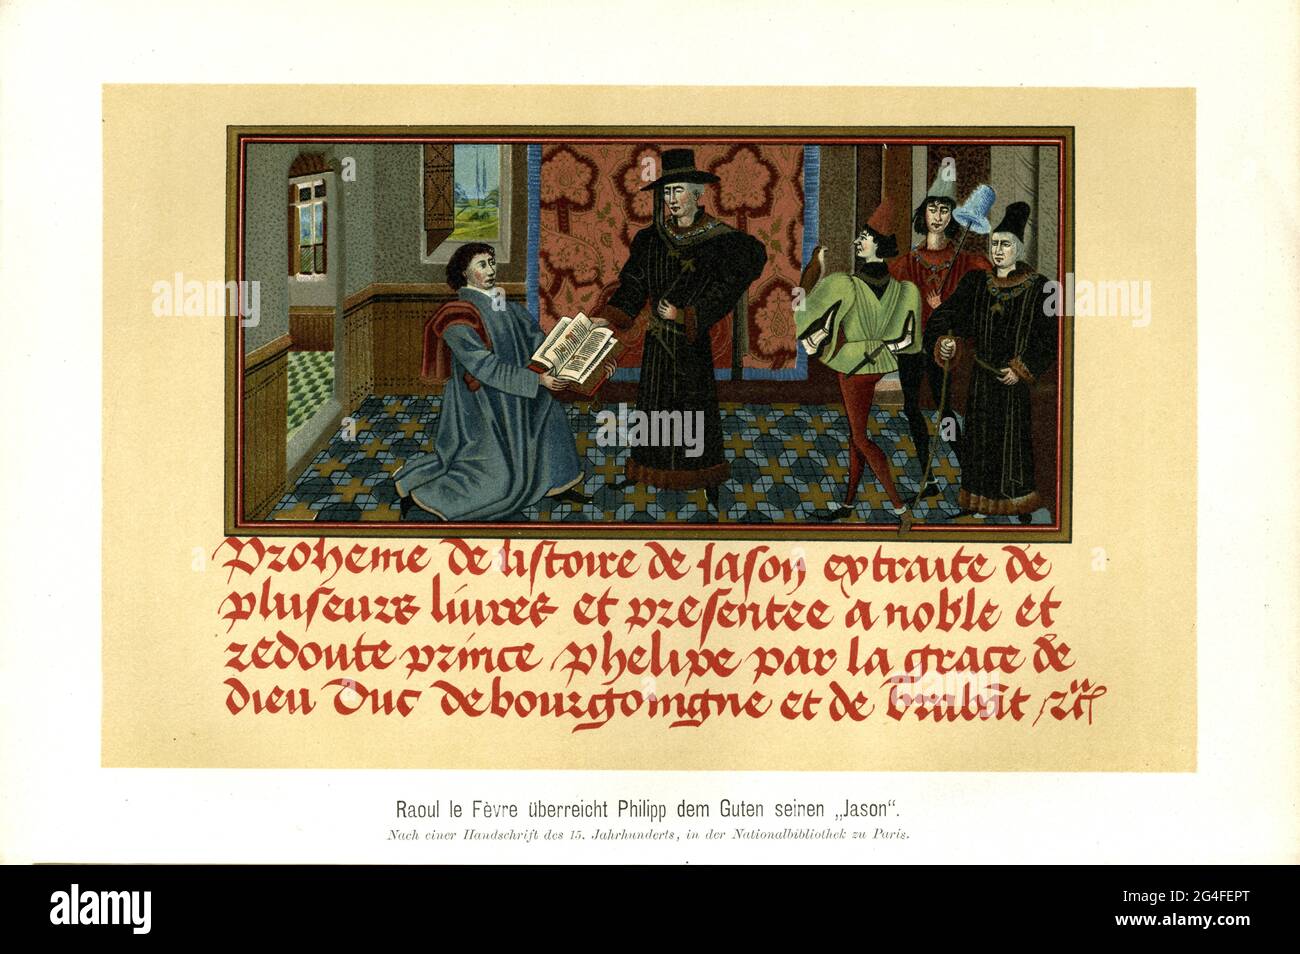 Raoul le Fevre presenta Filippo il Buono con la sua opera Historire de Jason secondo un manoscritto del 15 ° secolo, nella Biblioteca Nazionale di Foto Stock